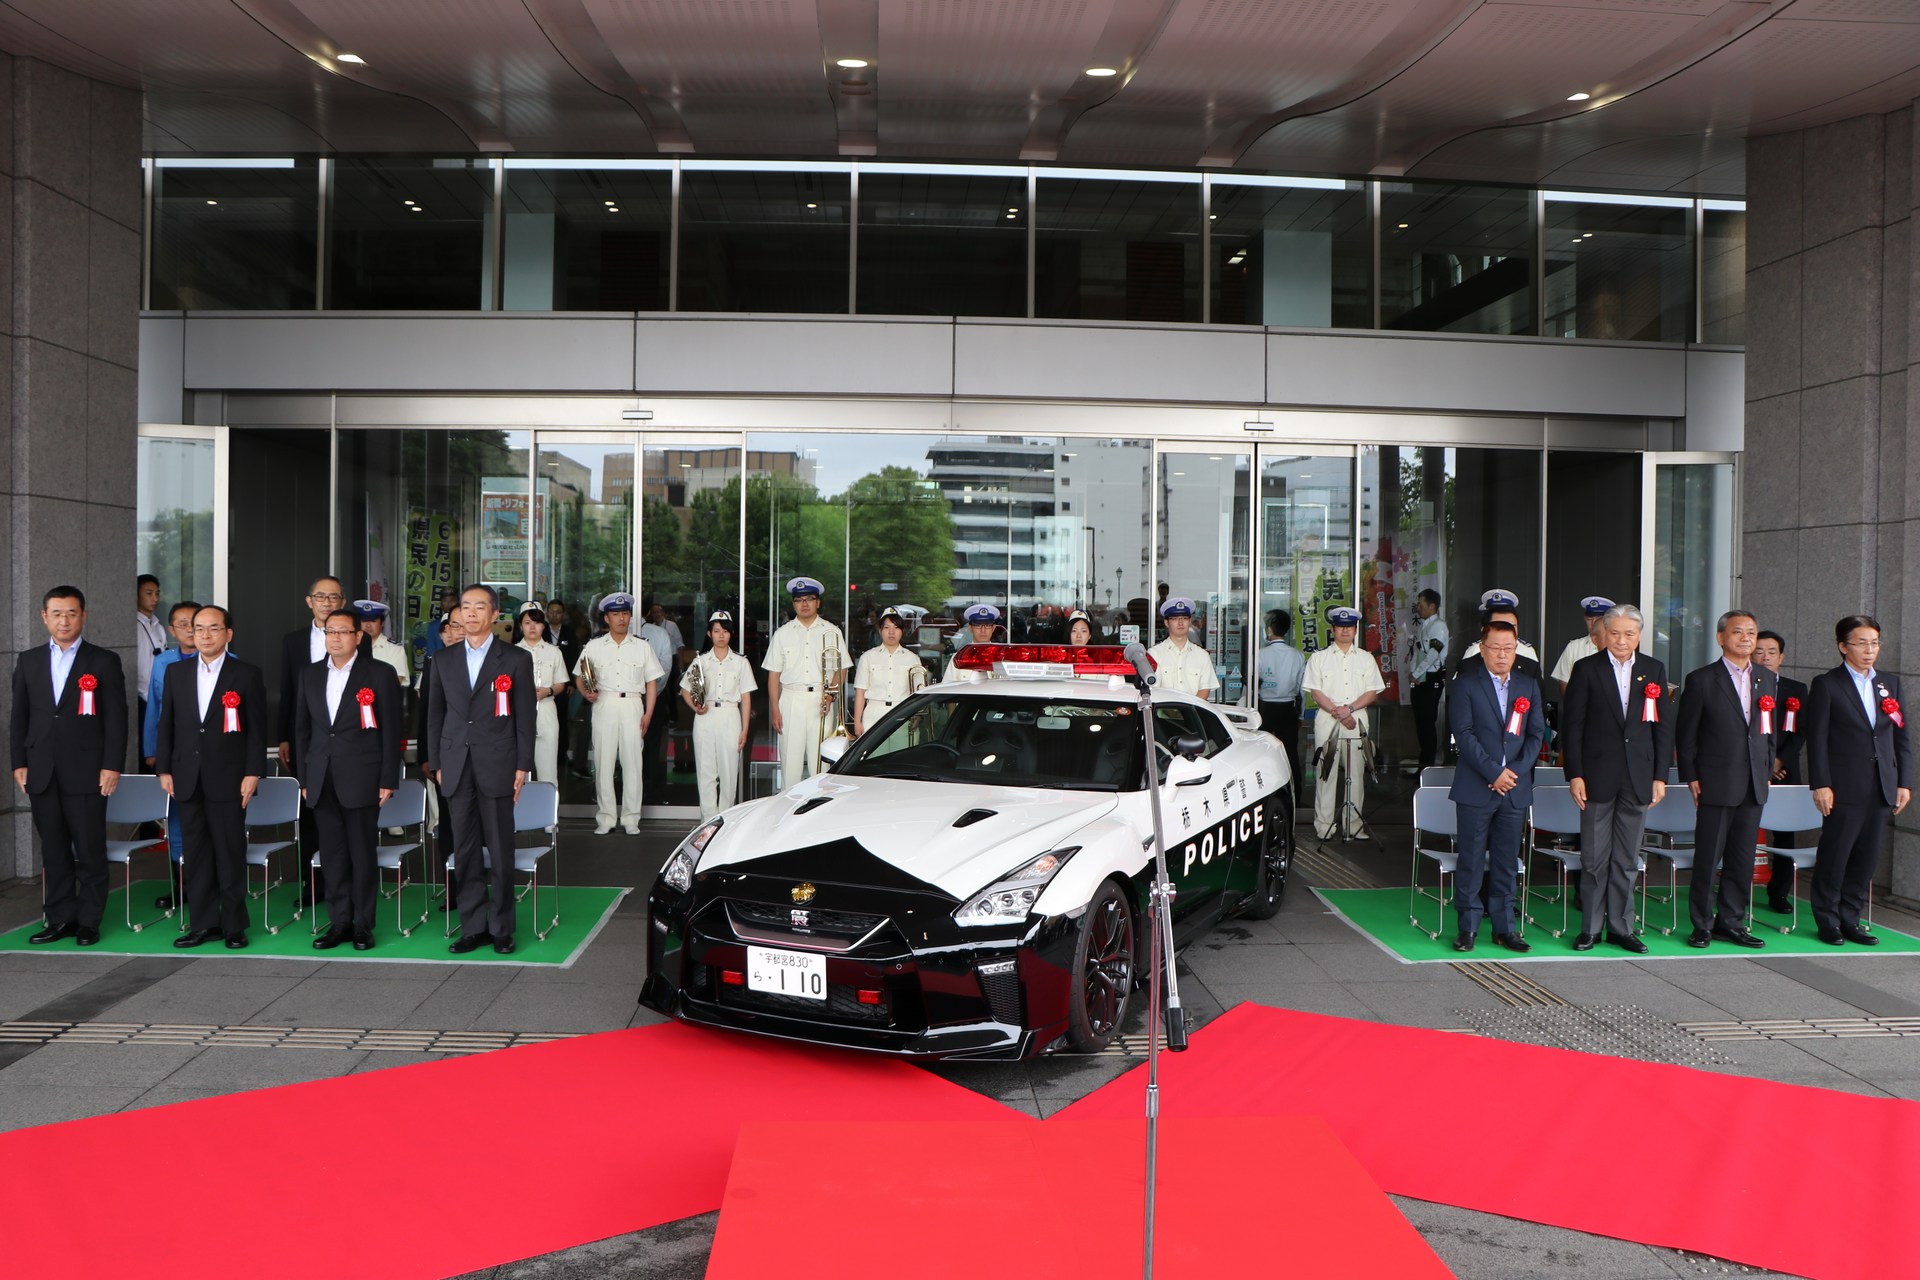 "بالصور" نيسان GT-R تدخل الخدمة رسميا بأسطول الشرطة اليابانية 34